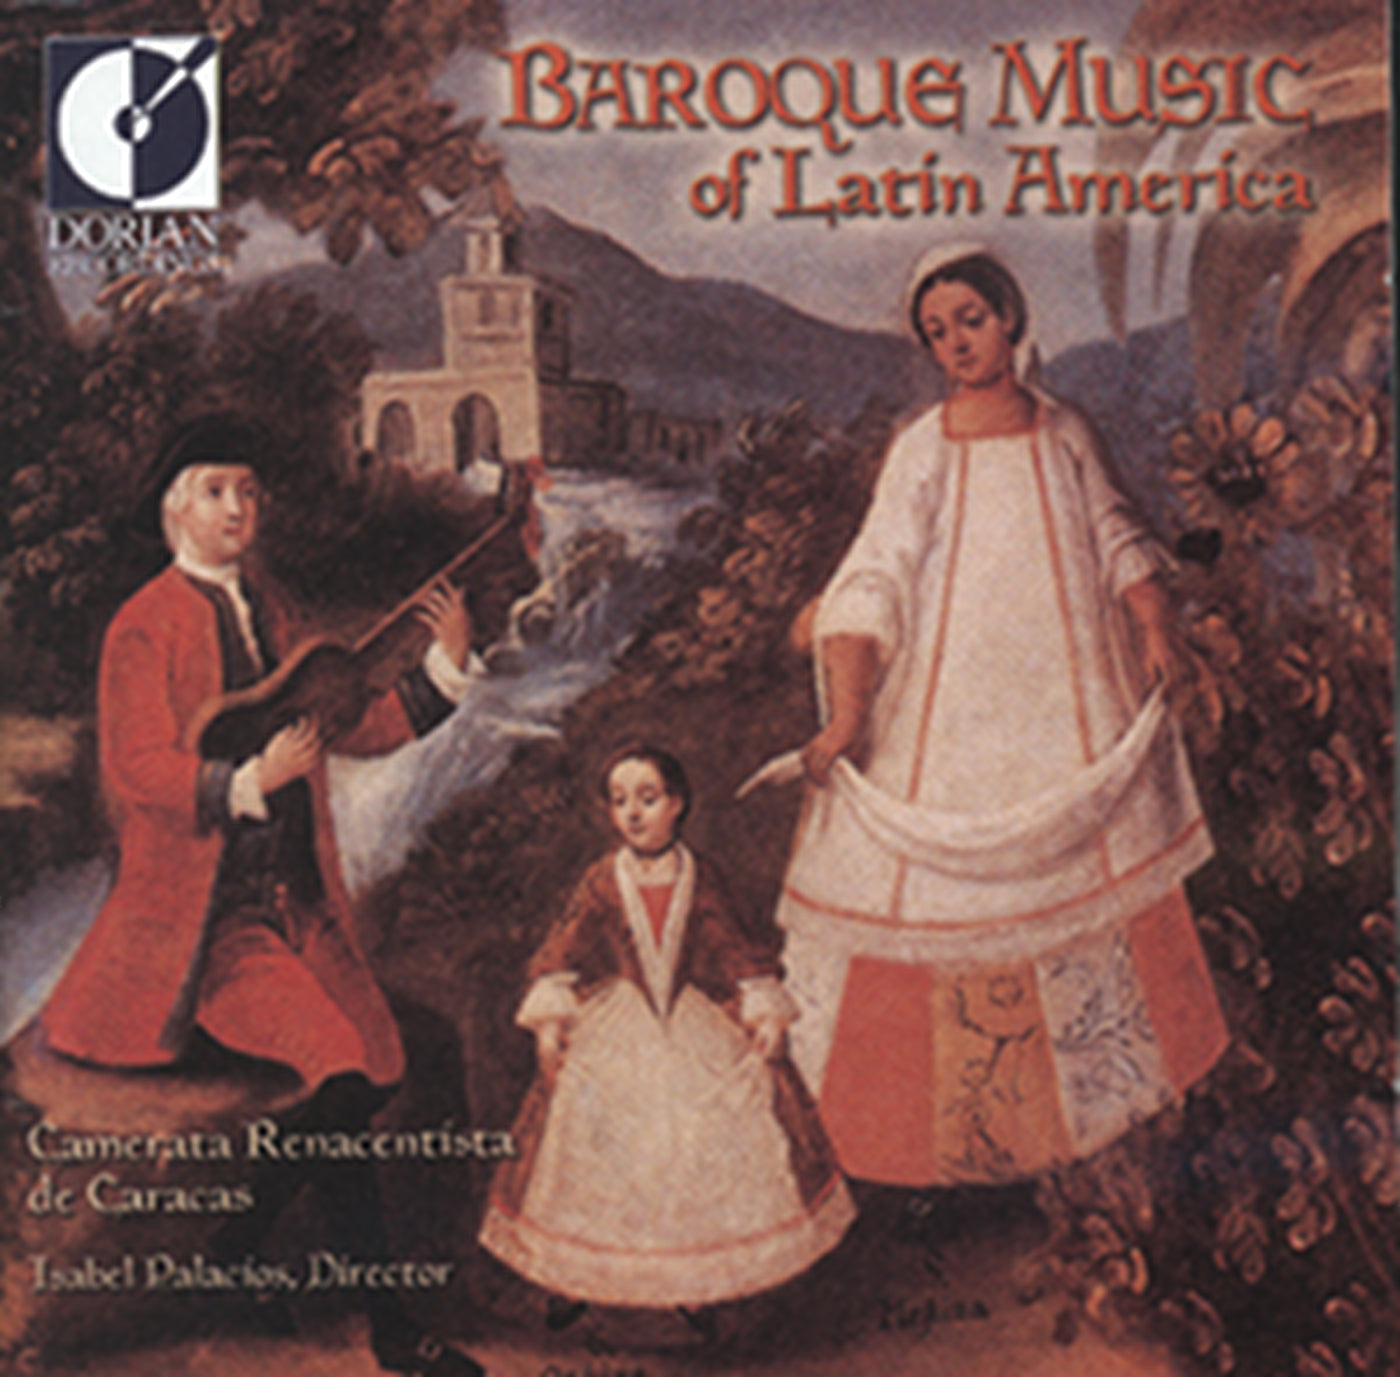 Baroque Music of Latin America / Palacios, Camerata Renacentista de Caracas